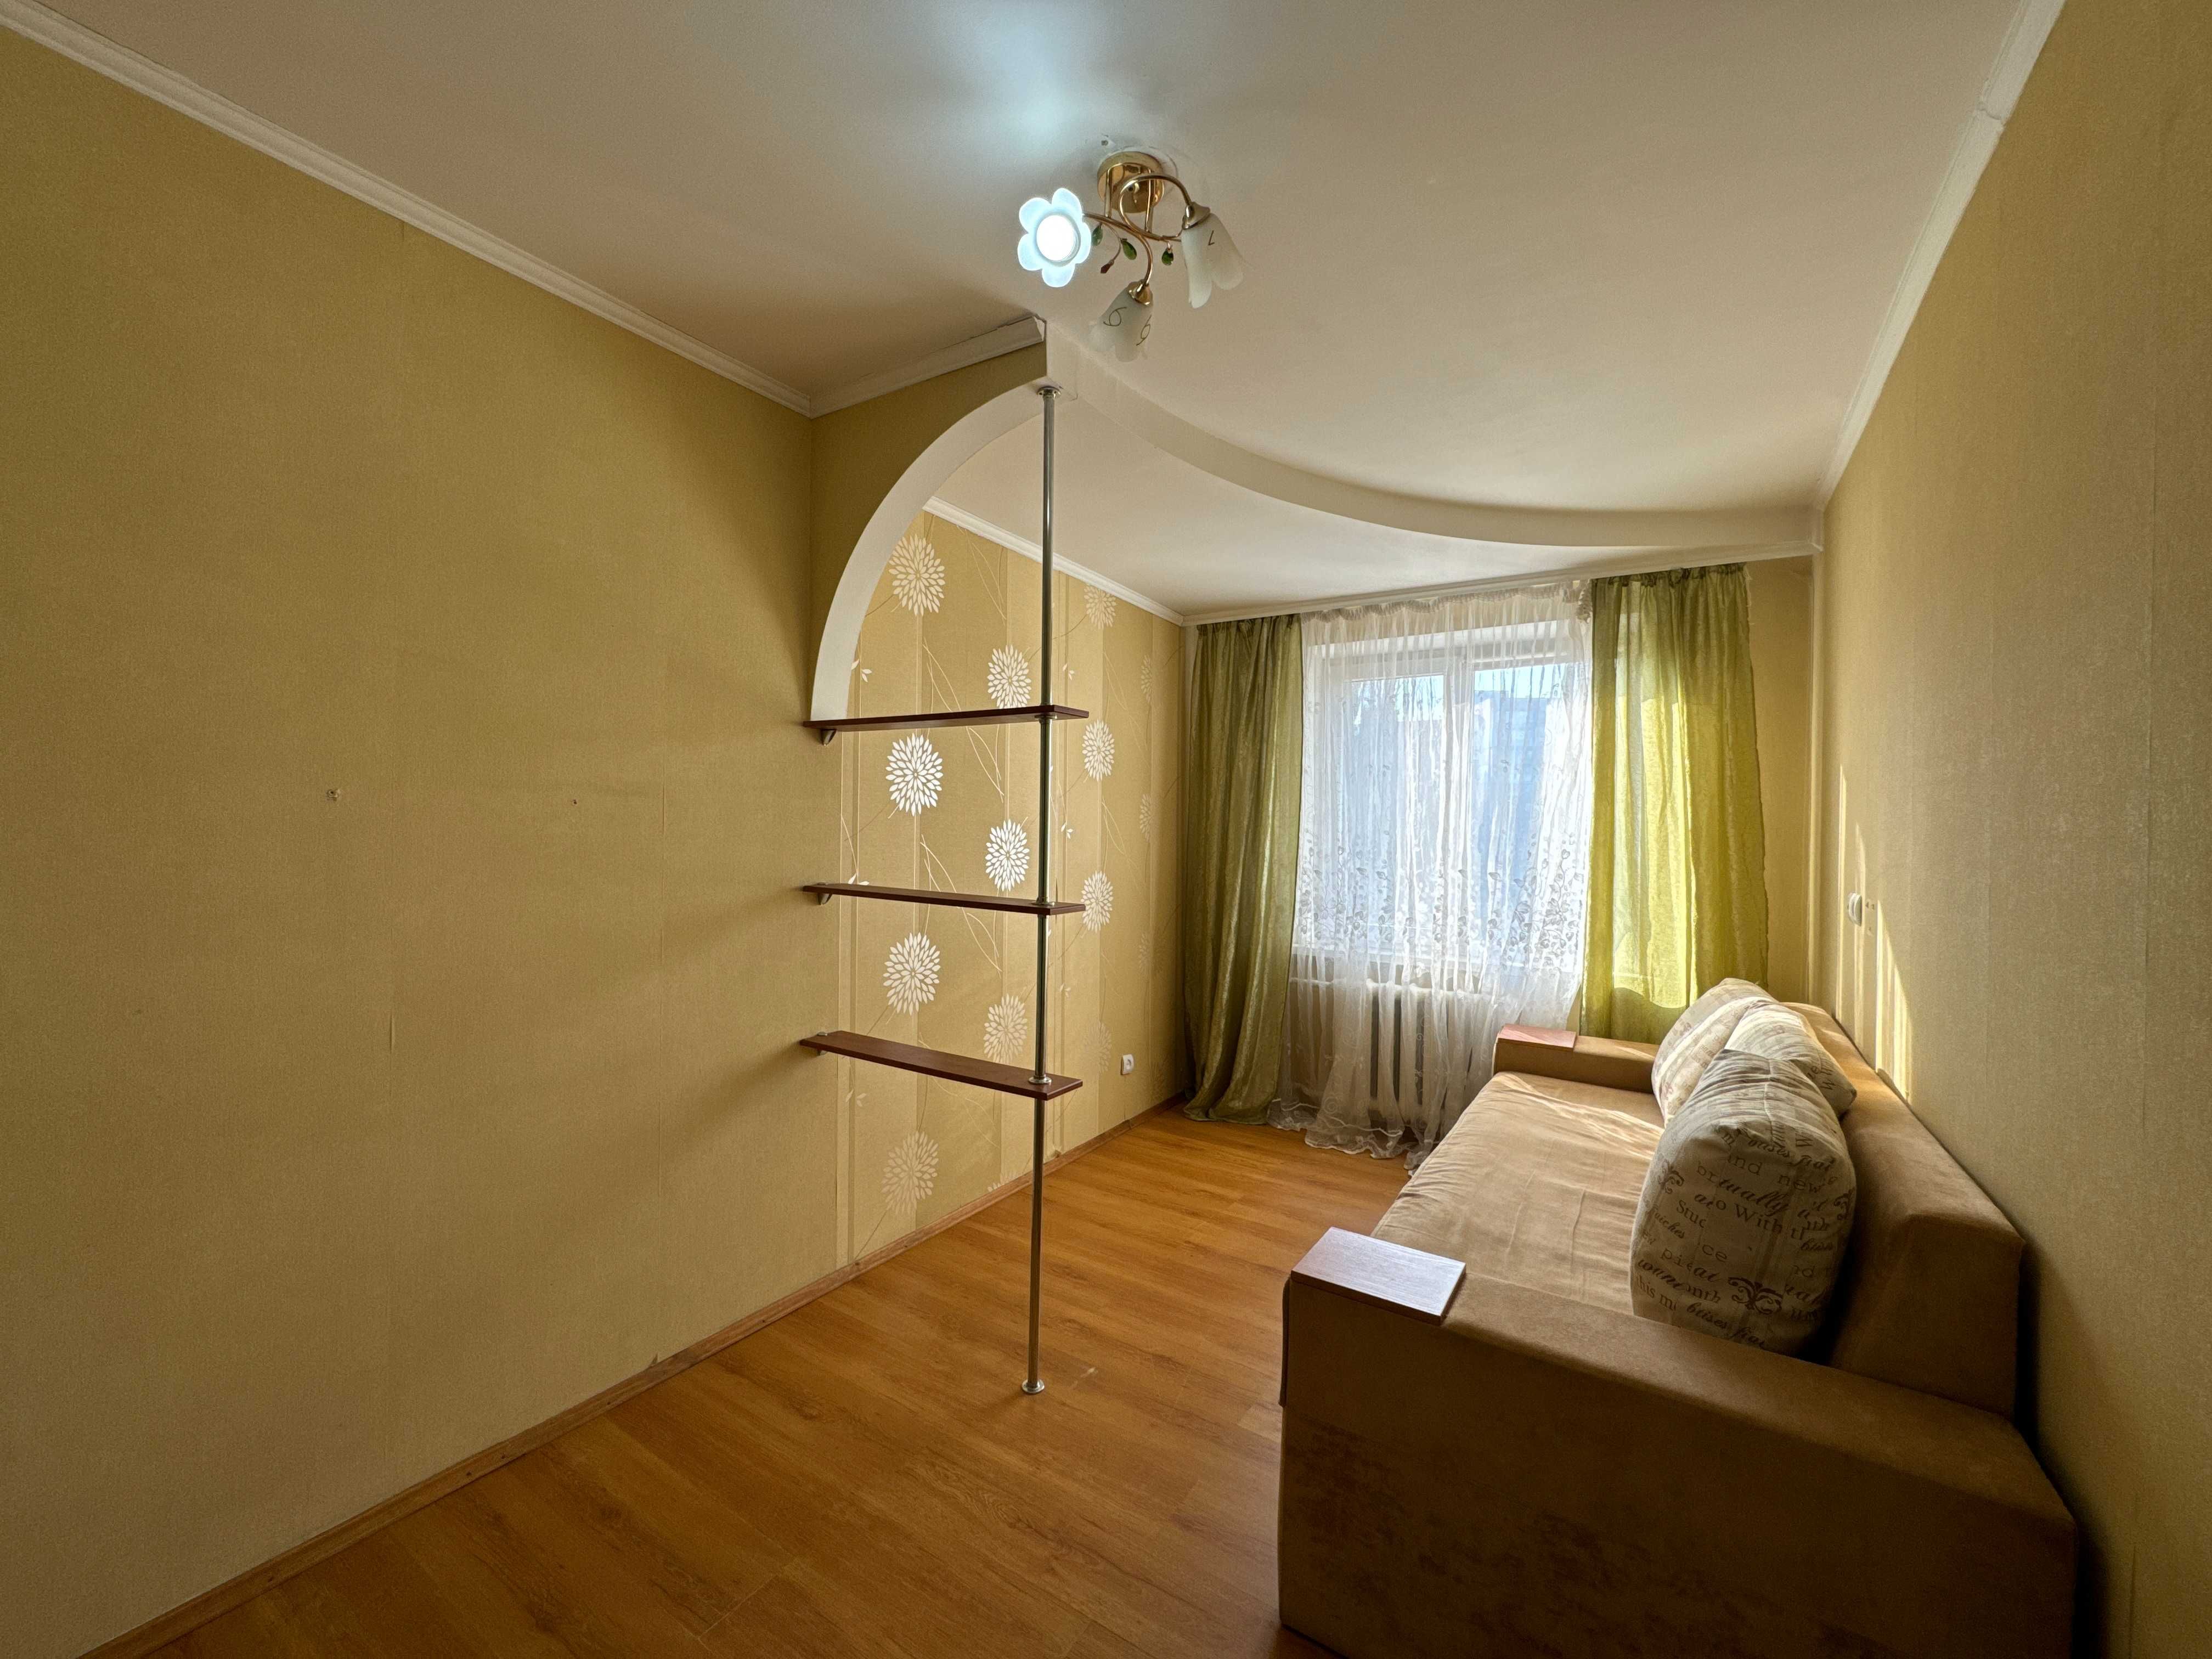 Продається 2-х кімнатна квартира в ТИХОМУ ЦЕНТРІ міста Житомир